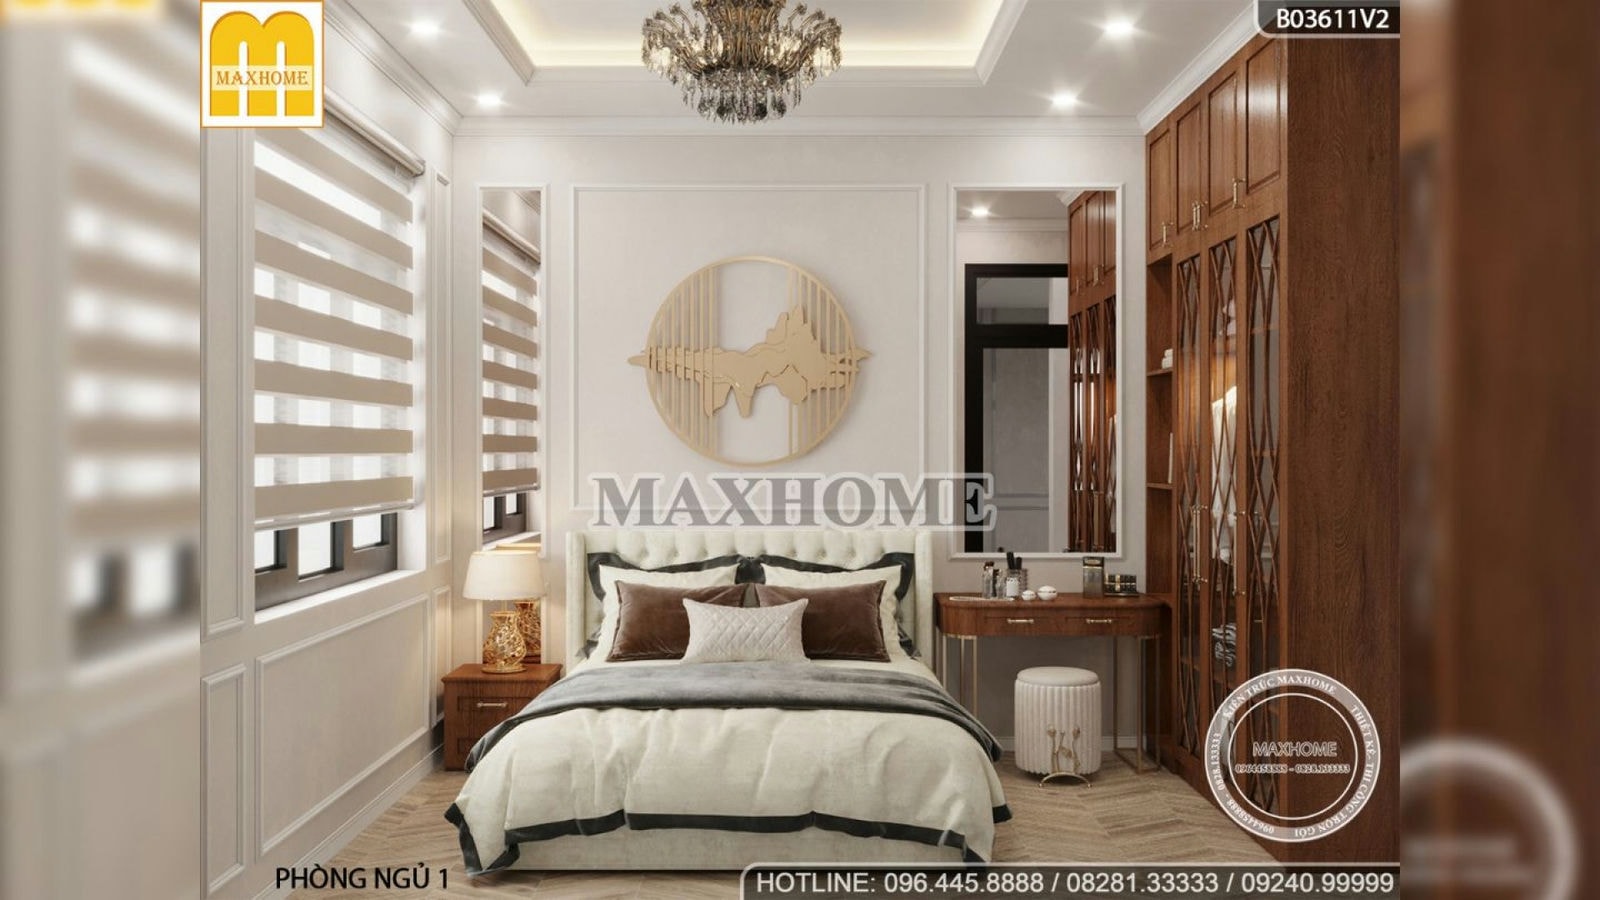 Nội thất thanh lịch do Maxhome thiết kế và thi công tại Nghệ An | MH01415